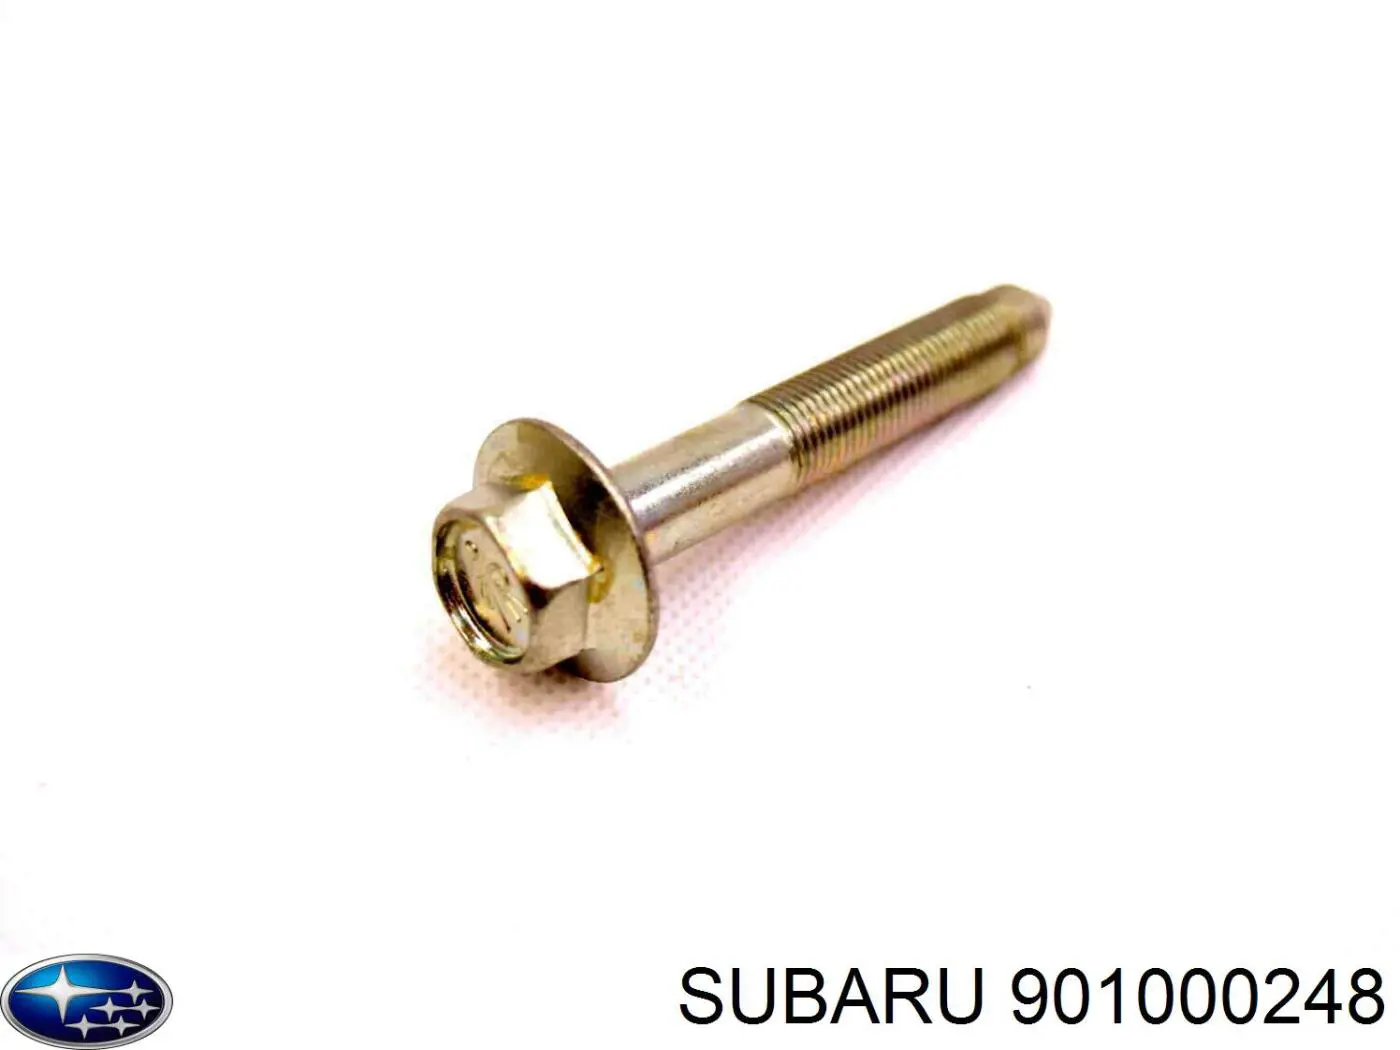 901000248 Subaru болт крепления передней балки (подрамника)